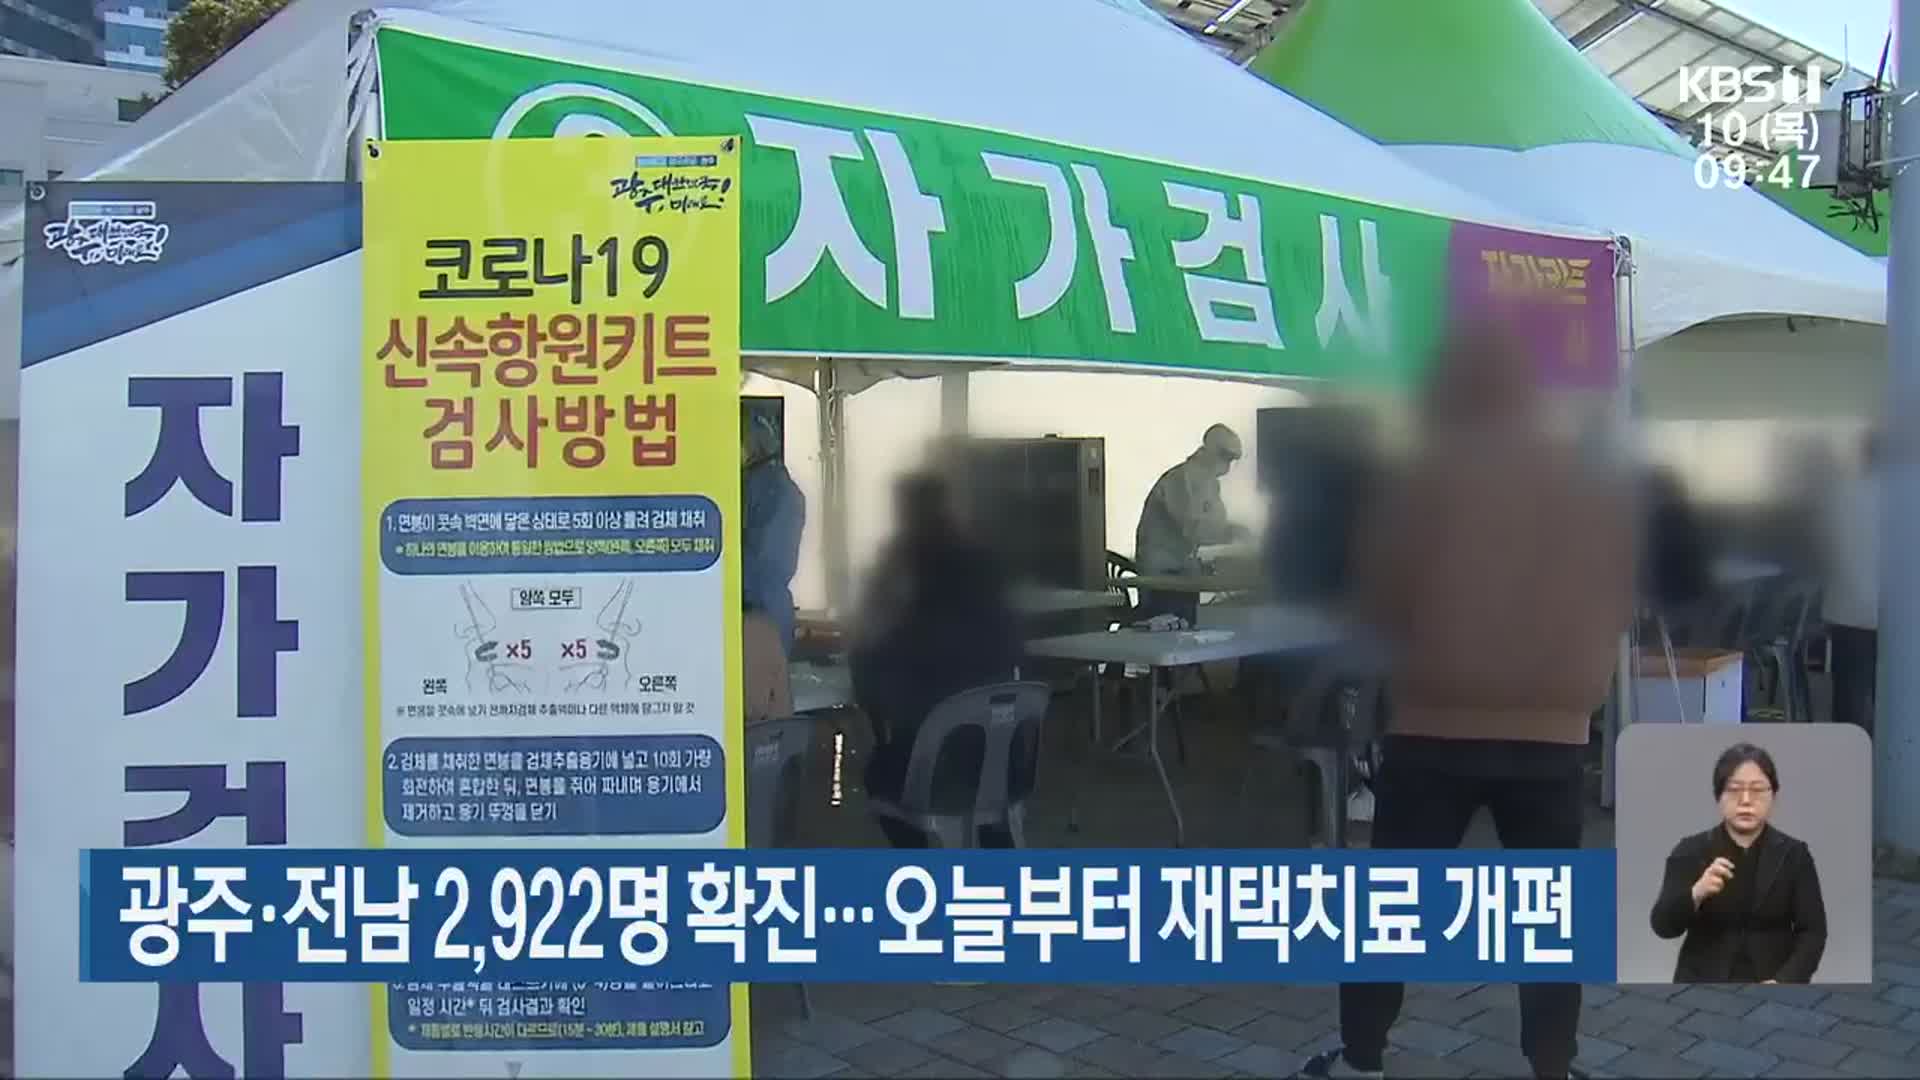 광주·전남 2,922명 확진…오늘부터 재택치료 개편